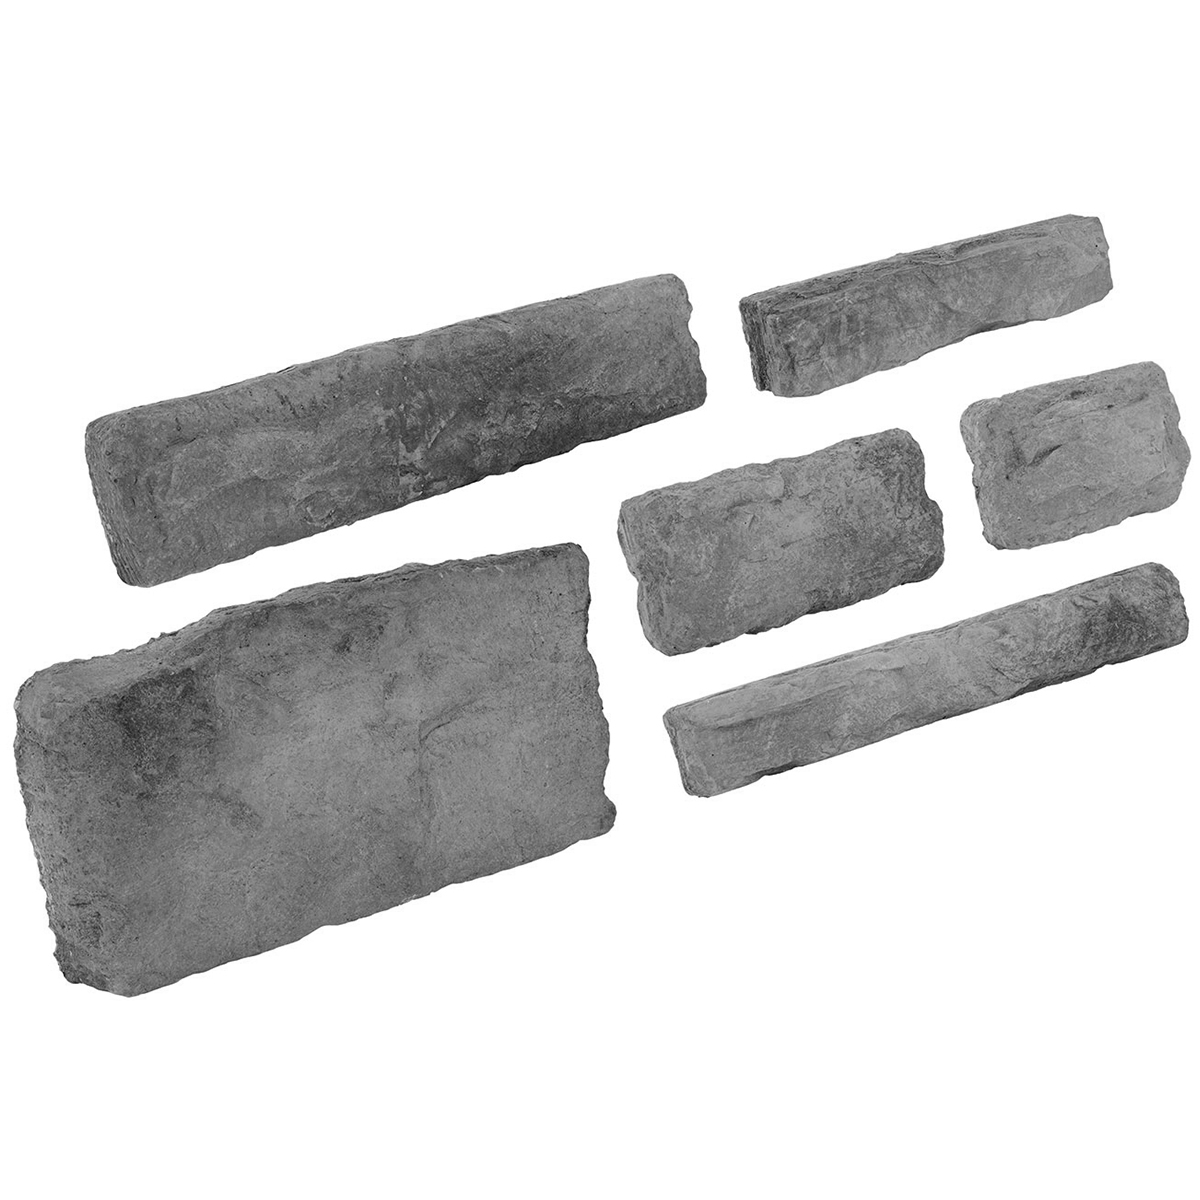 Foto de revestimento de pedra de imitação de cinza da Sardenha 